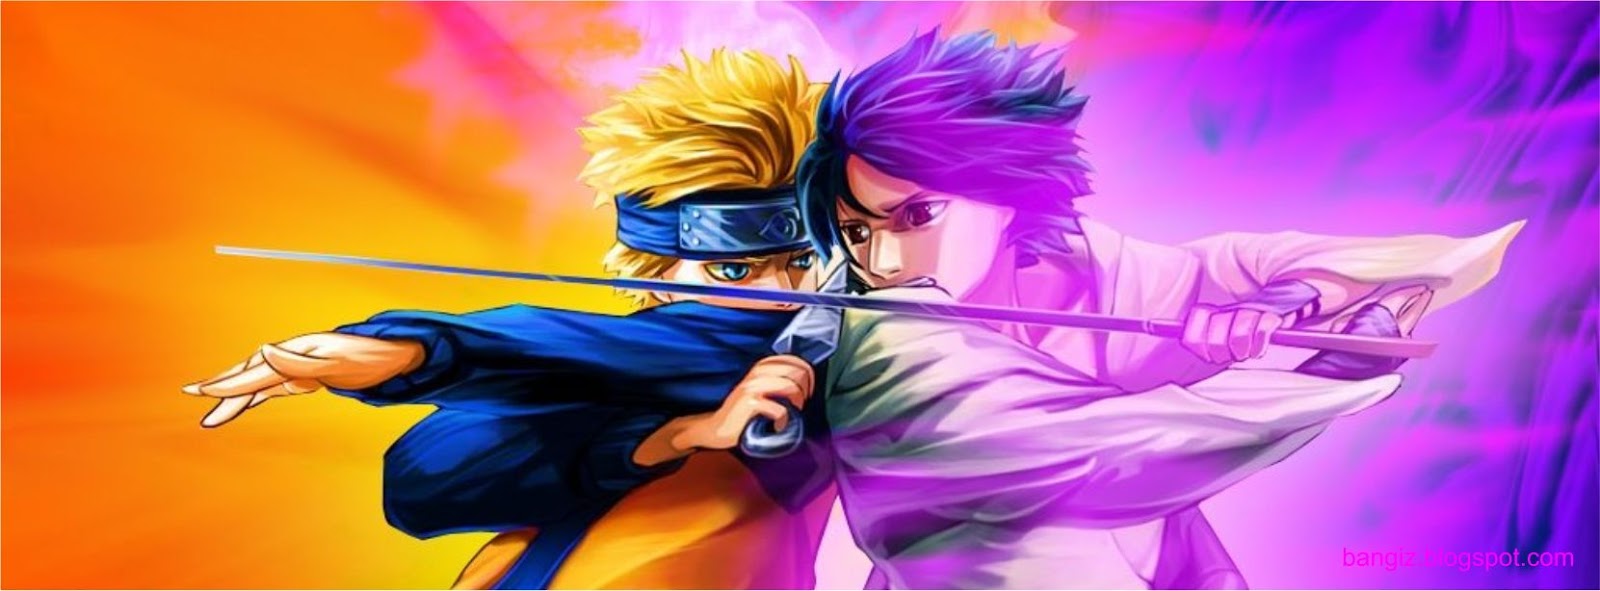 Wallpaper Naruto Keren Dan Terbaru Koleksi Gambar Hd